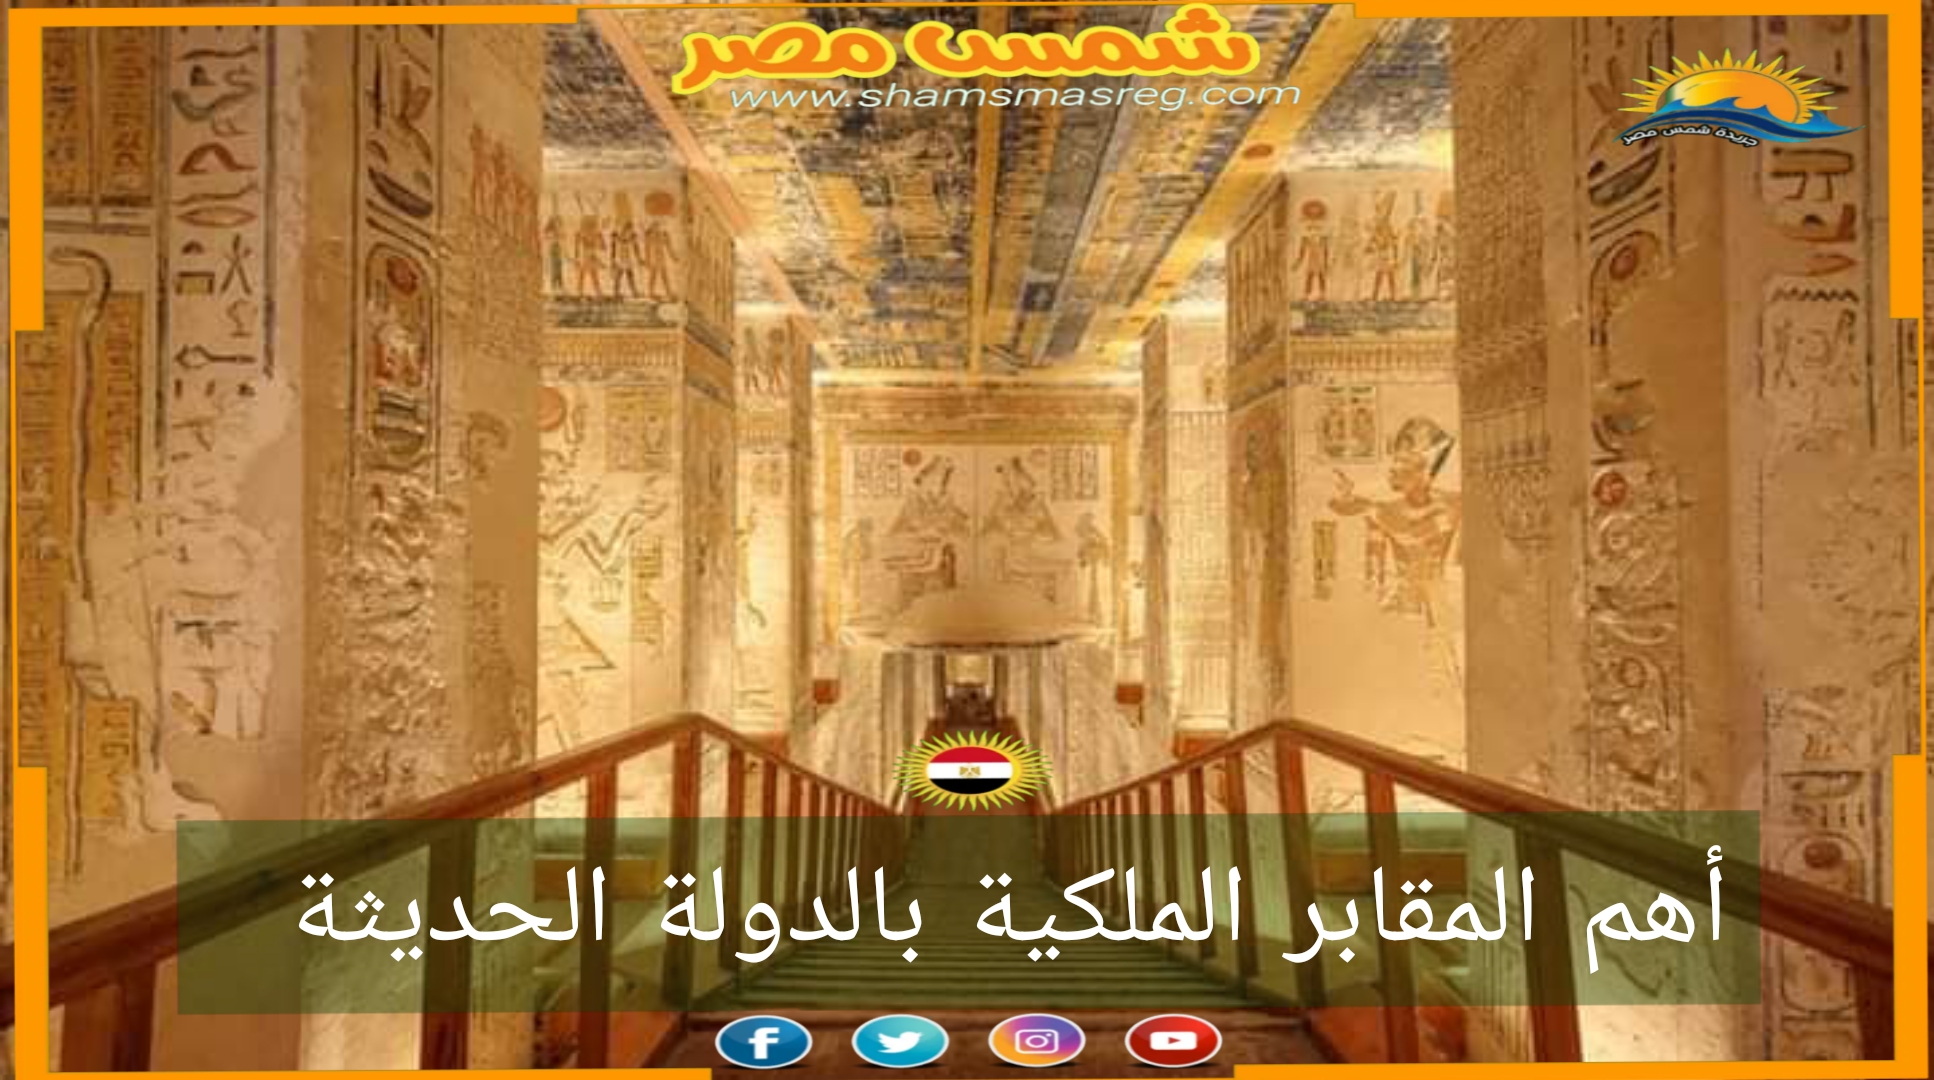 شمس مصر/ أهم المقابر الملكية بالدولة الحديثة